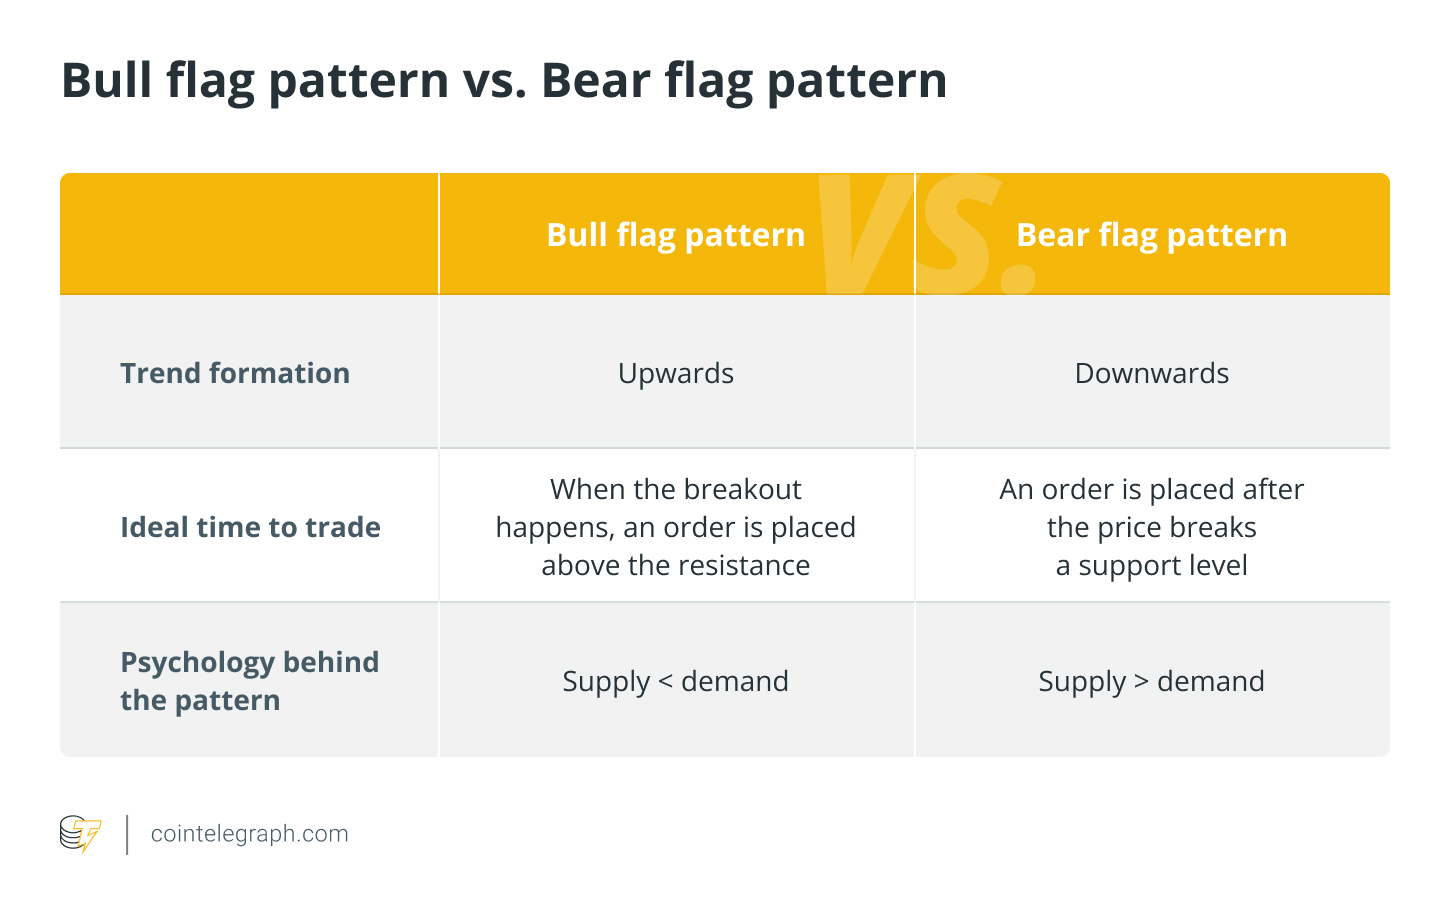 Bull flag pattern vs. Bear flag pattern